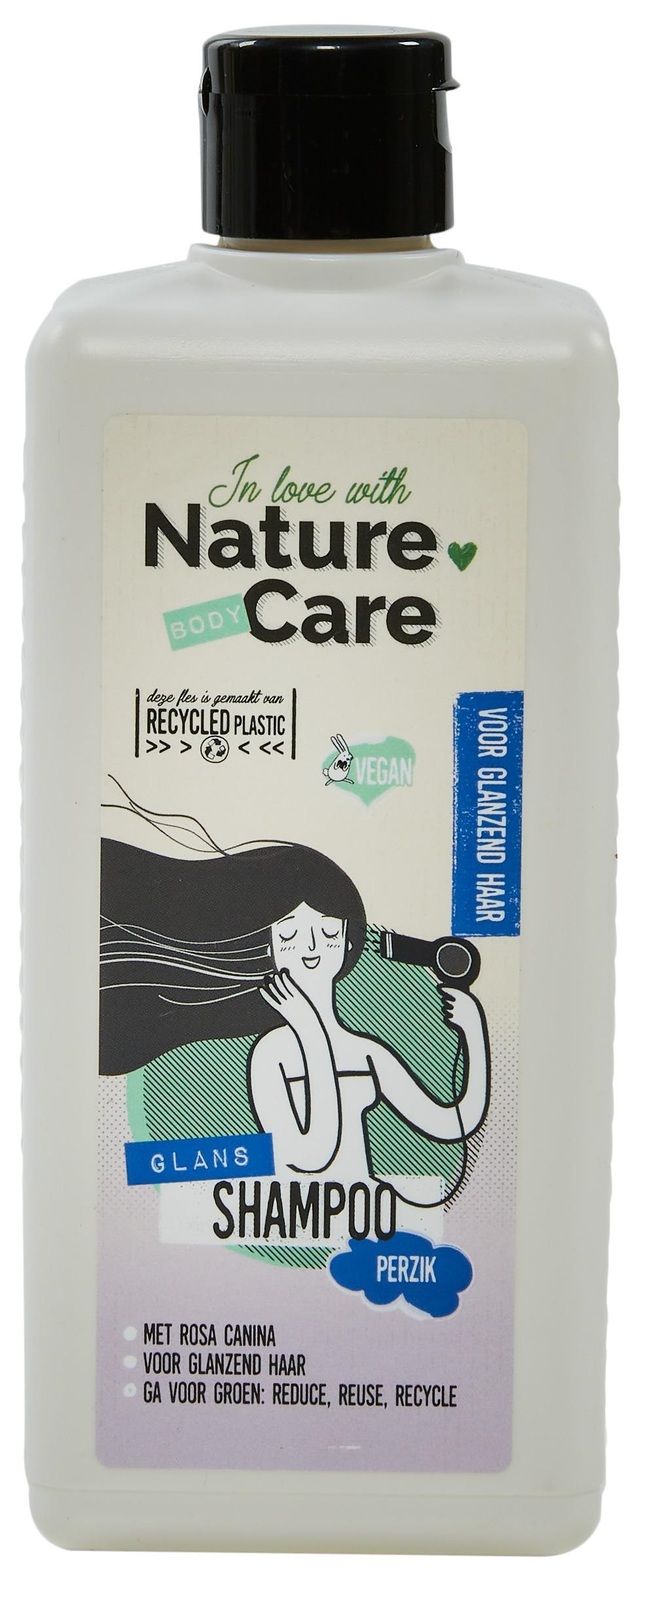 Nature Care Shampoo Perzik